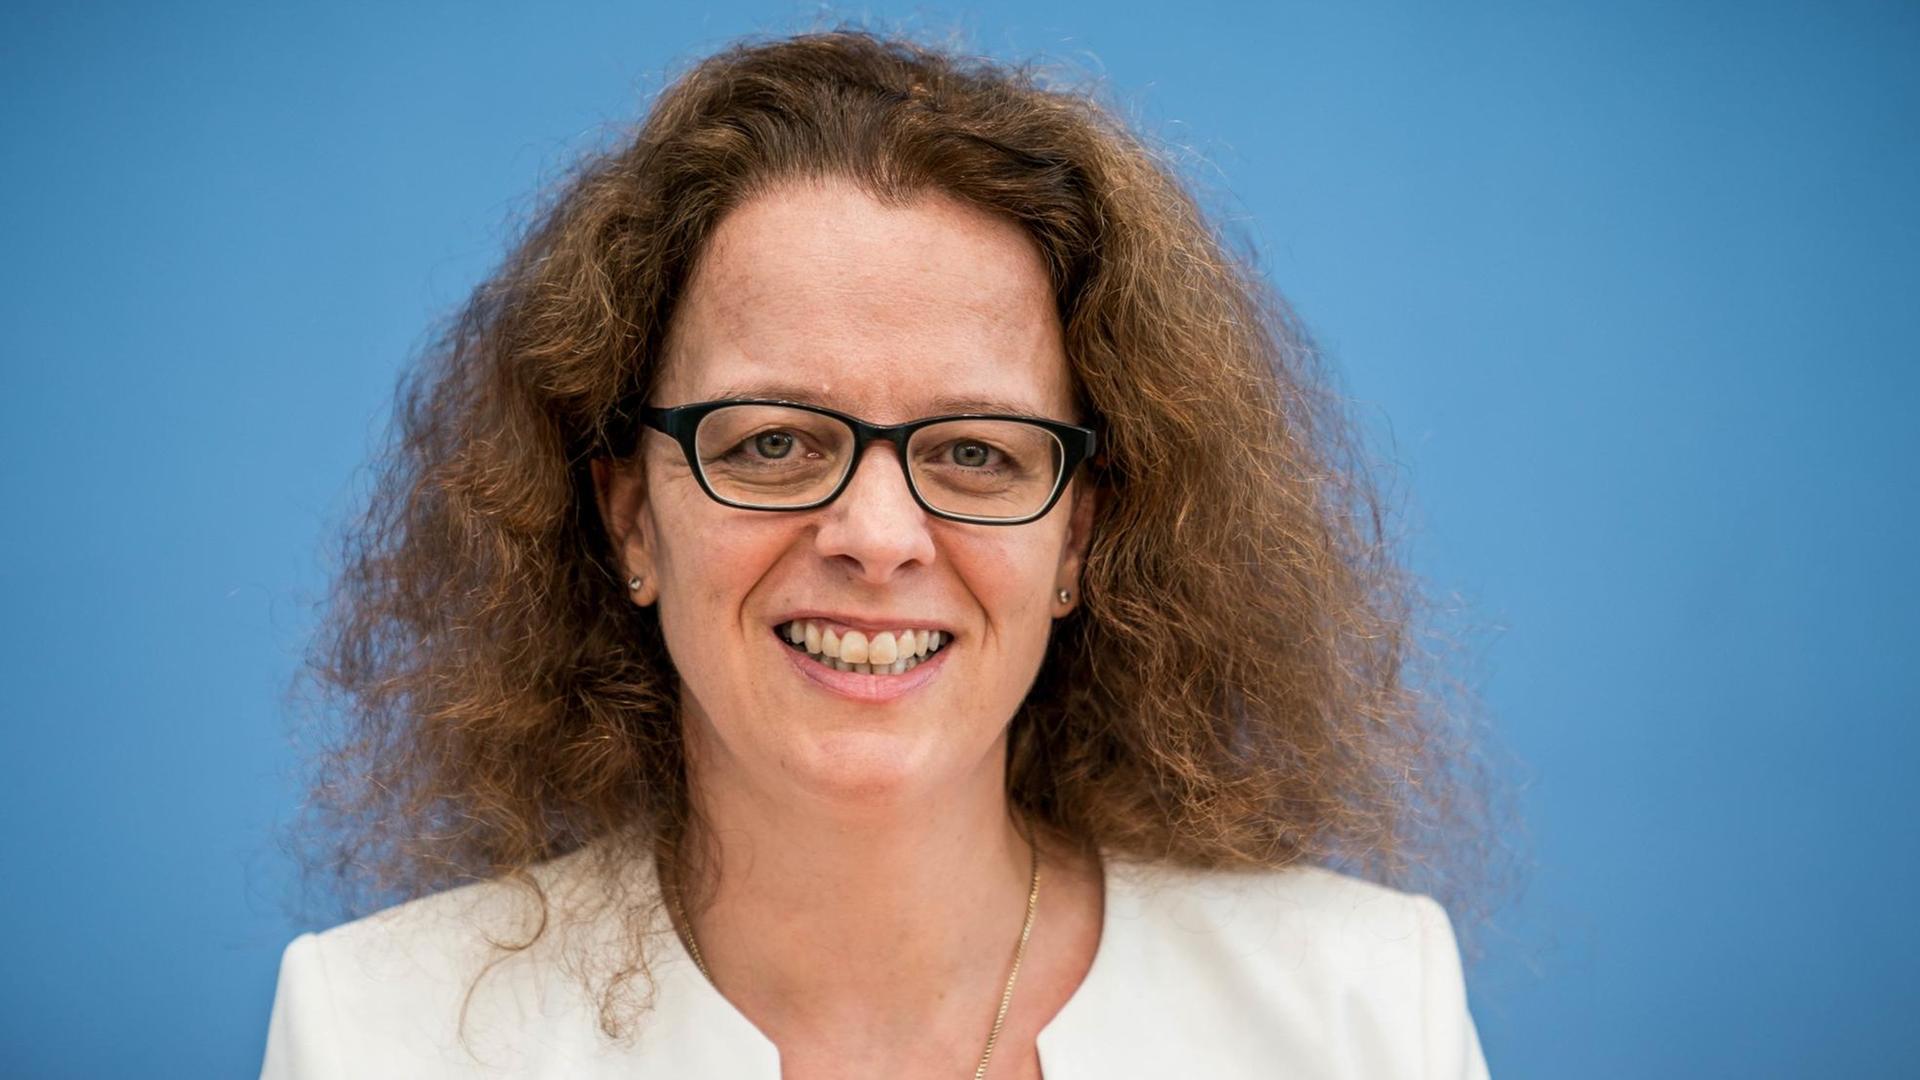 12.07.2019, Berlin: Isabel Schnabel, Professorin für Finanzmarktökonoimie an der Rheinischen Friedrich-Wilhelms-Universität Bonn, soll Nachfoglerin von EZB-Direktoriumsmitglied Lautenschläger werden.